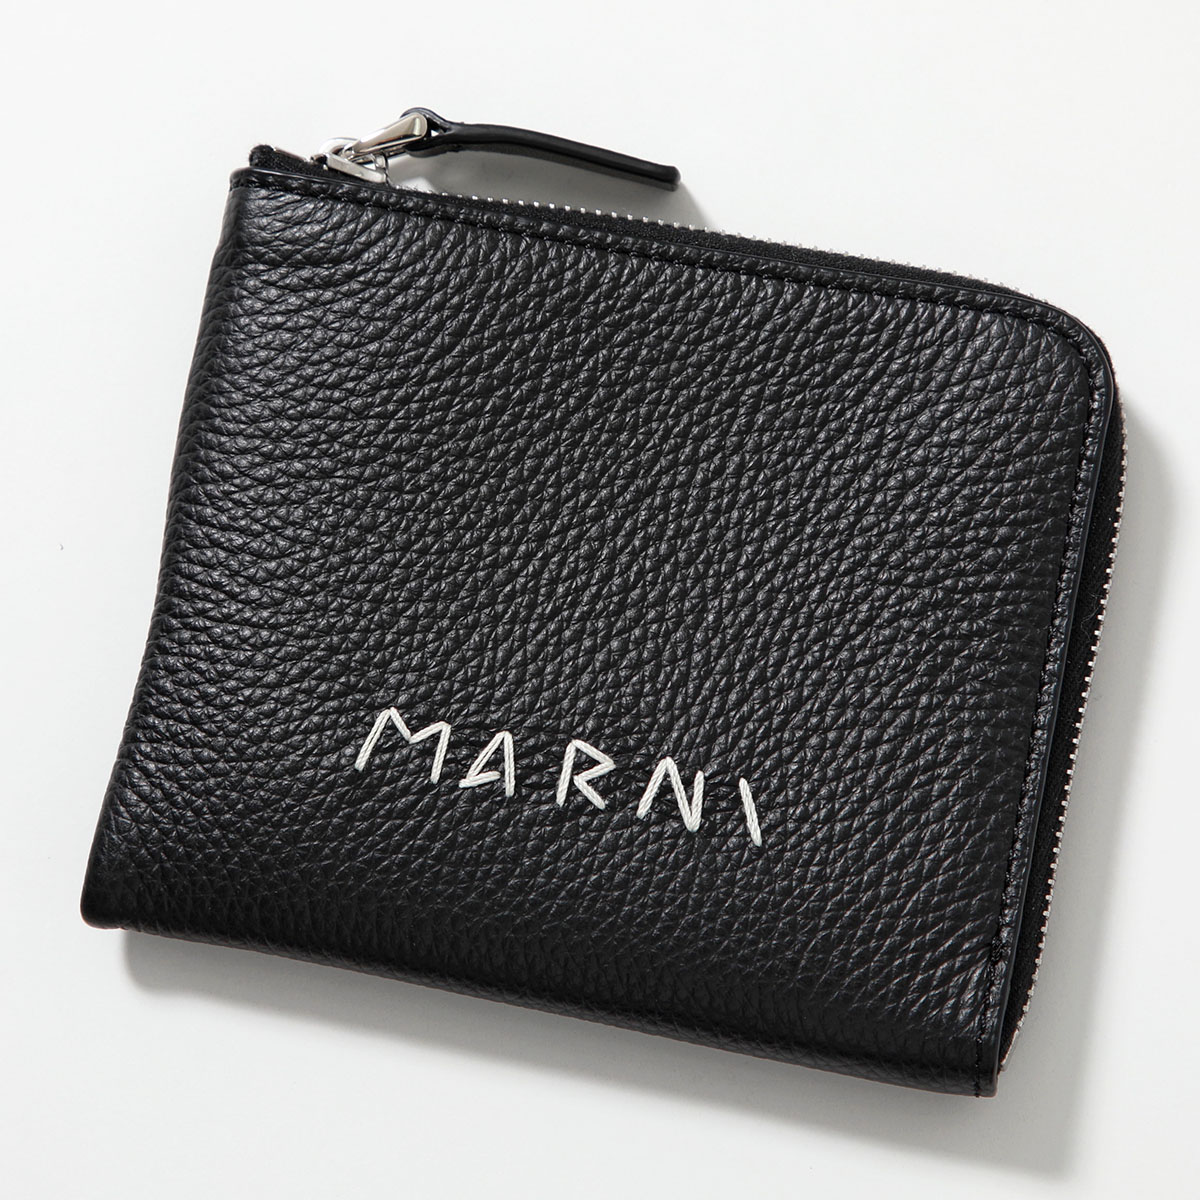 MARNI マルニ コインケース PFMI0095Q0 P6533 メンズ ミニ財布 カードケース ...